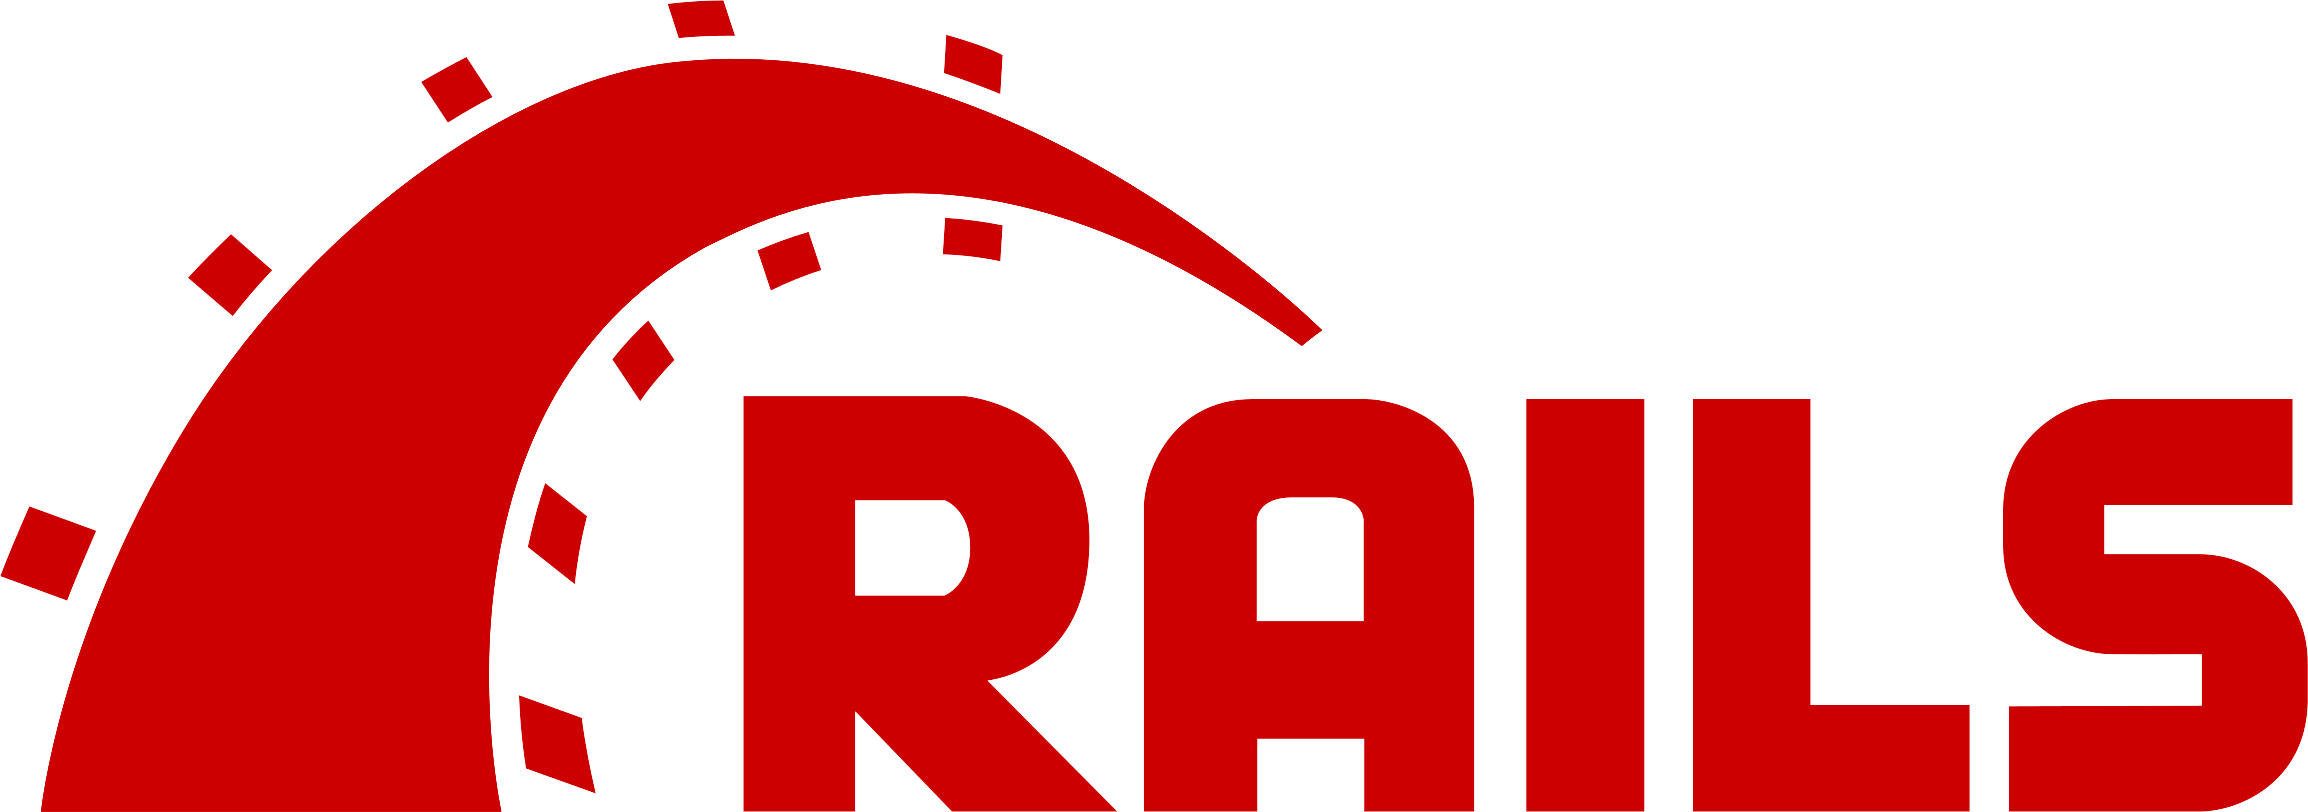 Ruby-on-Rails Logo